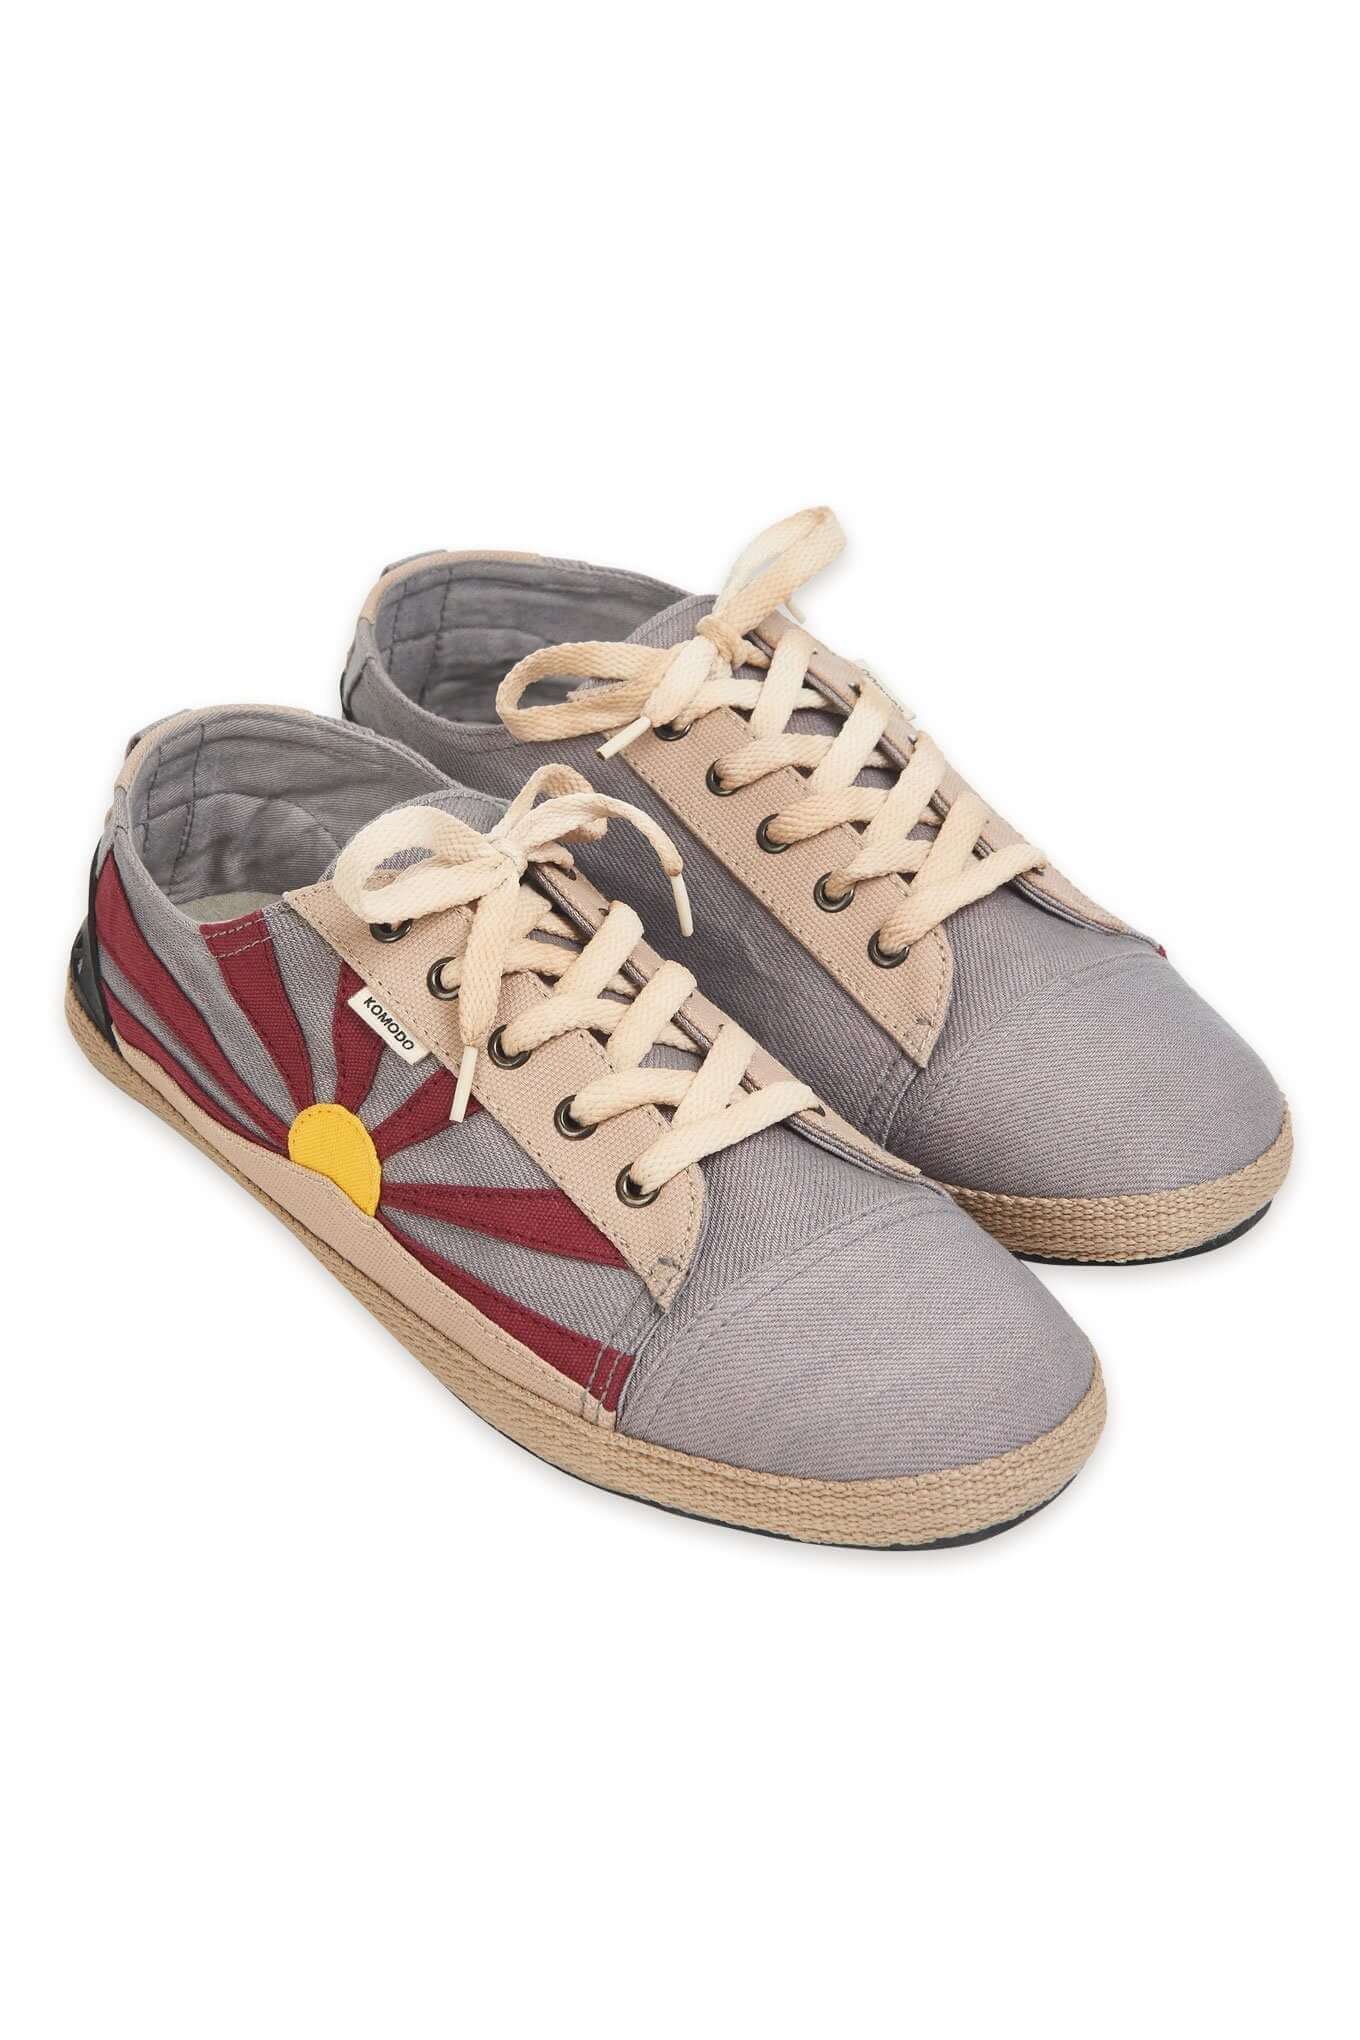 FREE TIBET Womens Shoes Grey, EURO 36